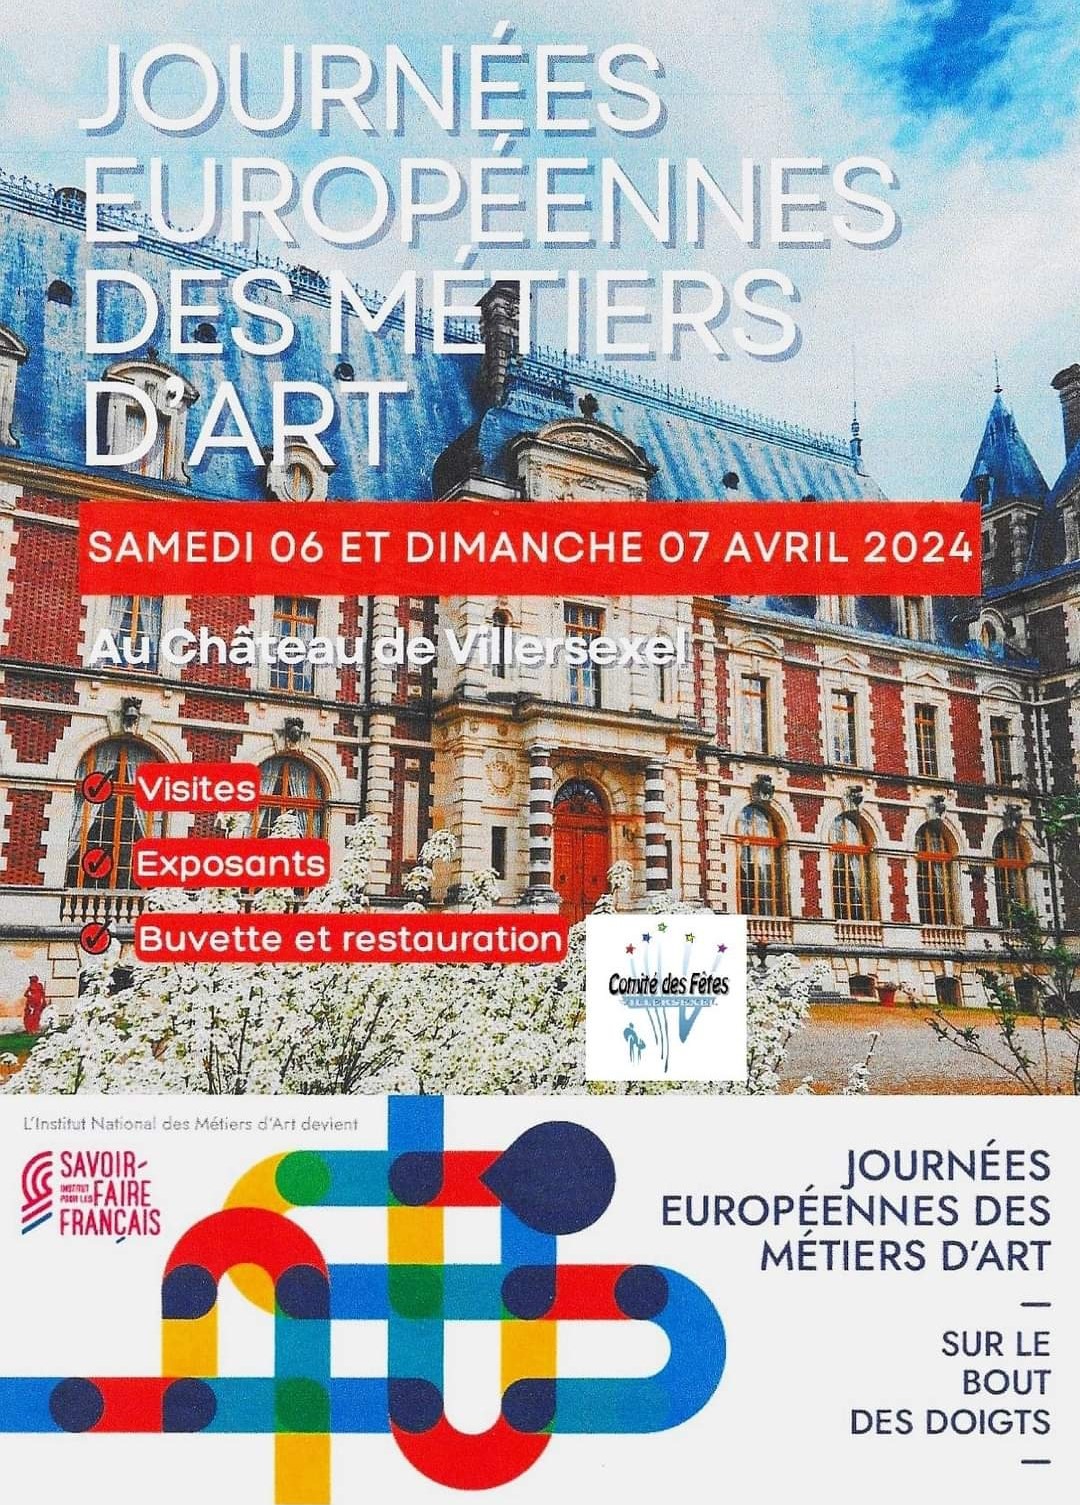 Journées européennes des métiers d'art - 06 et 07 avril 2024